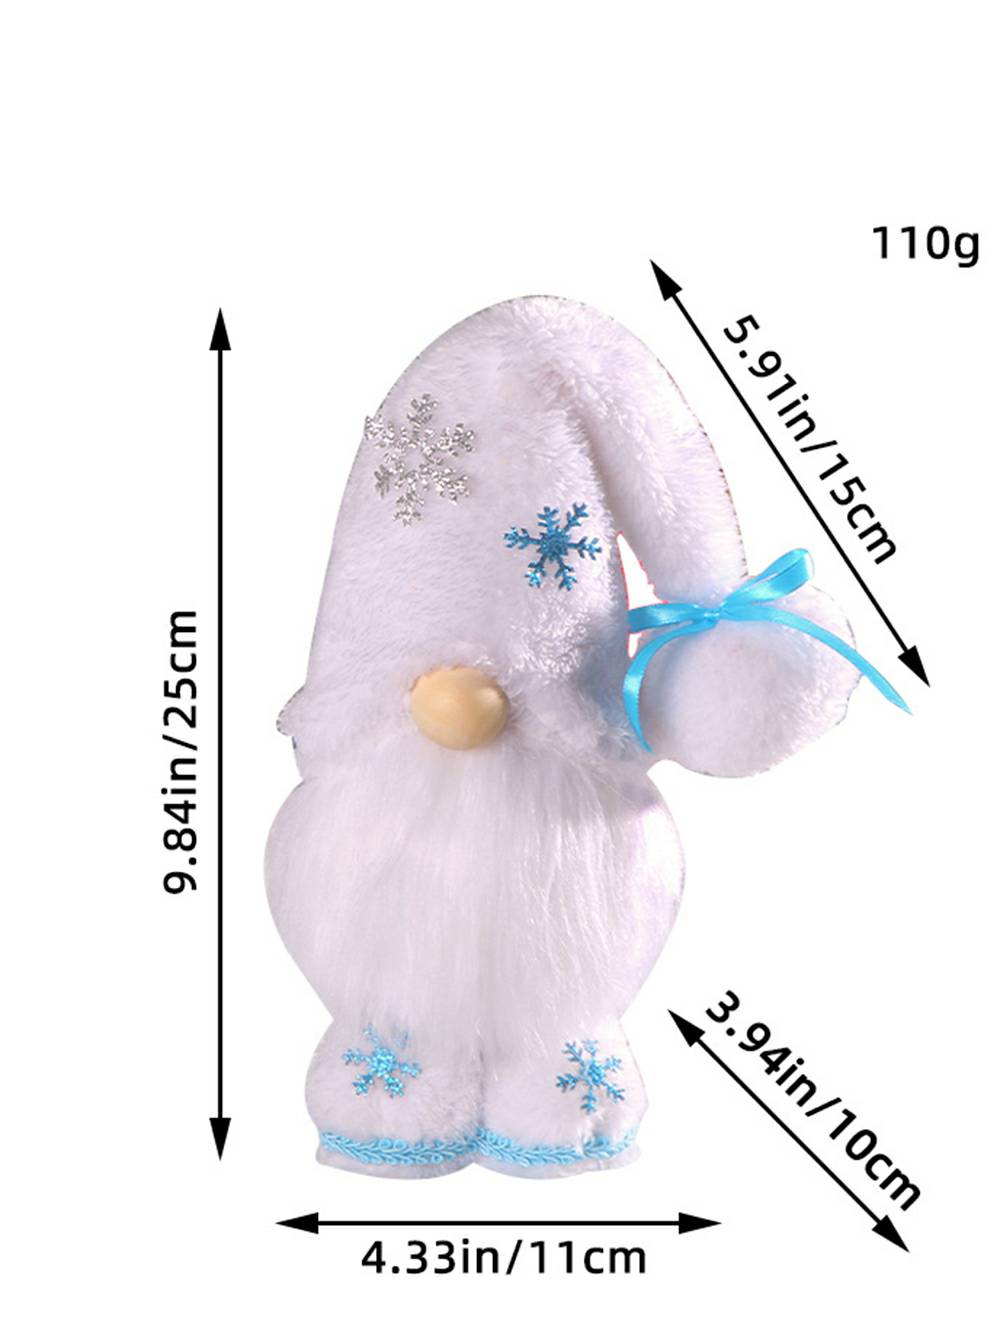 Boneco Rudolph de pelúcia azul e branco de Natal